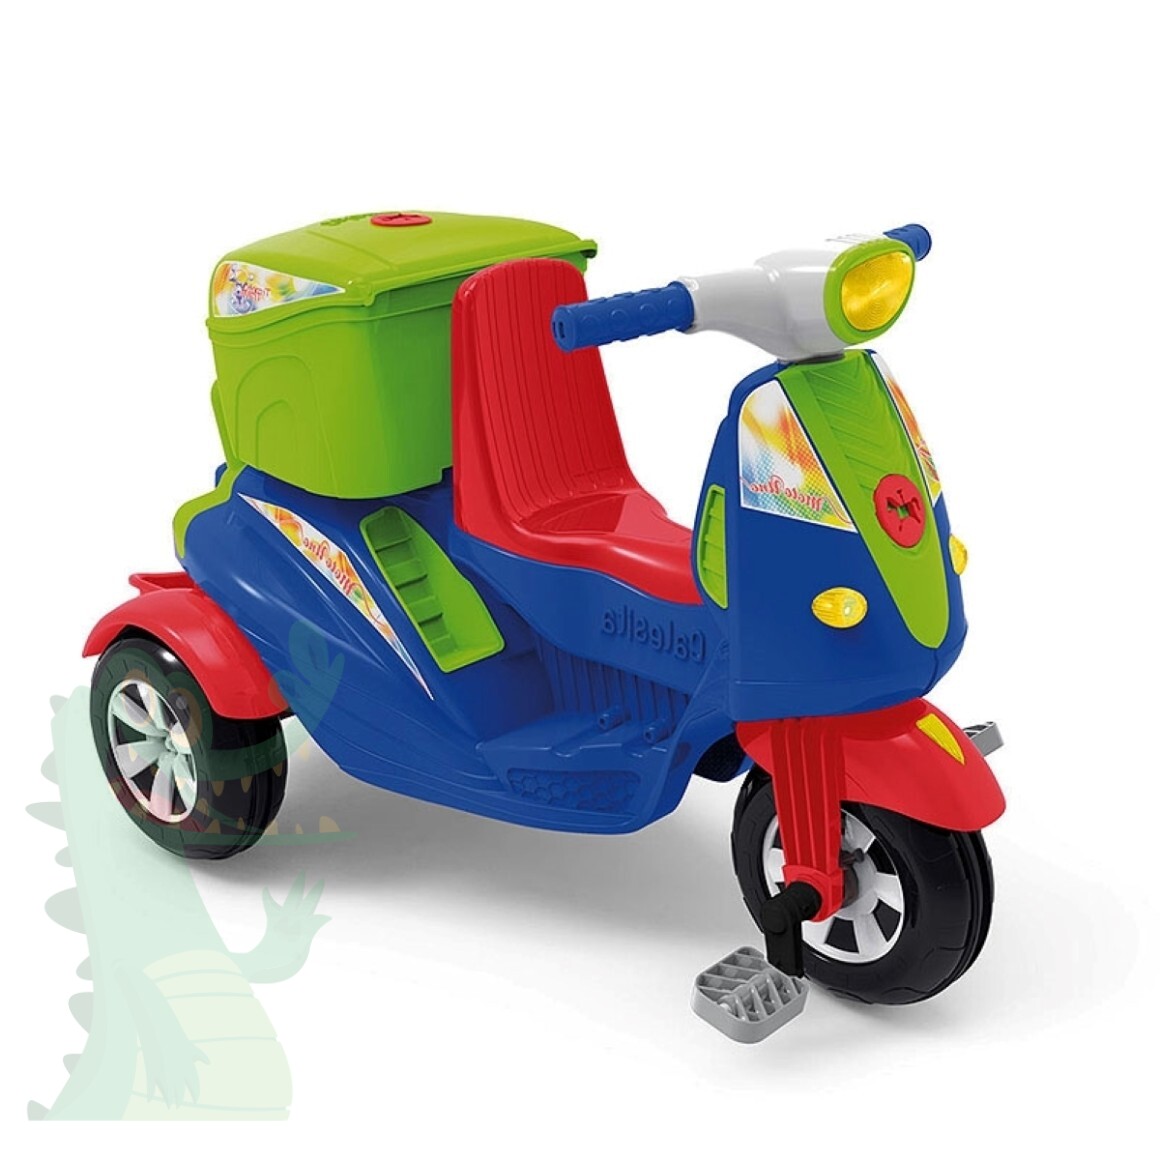 Moto Uno - Calesita Brinquedos